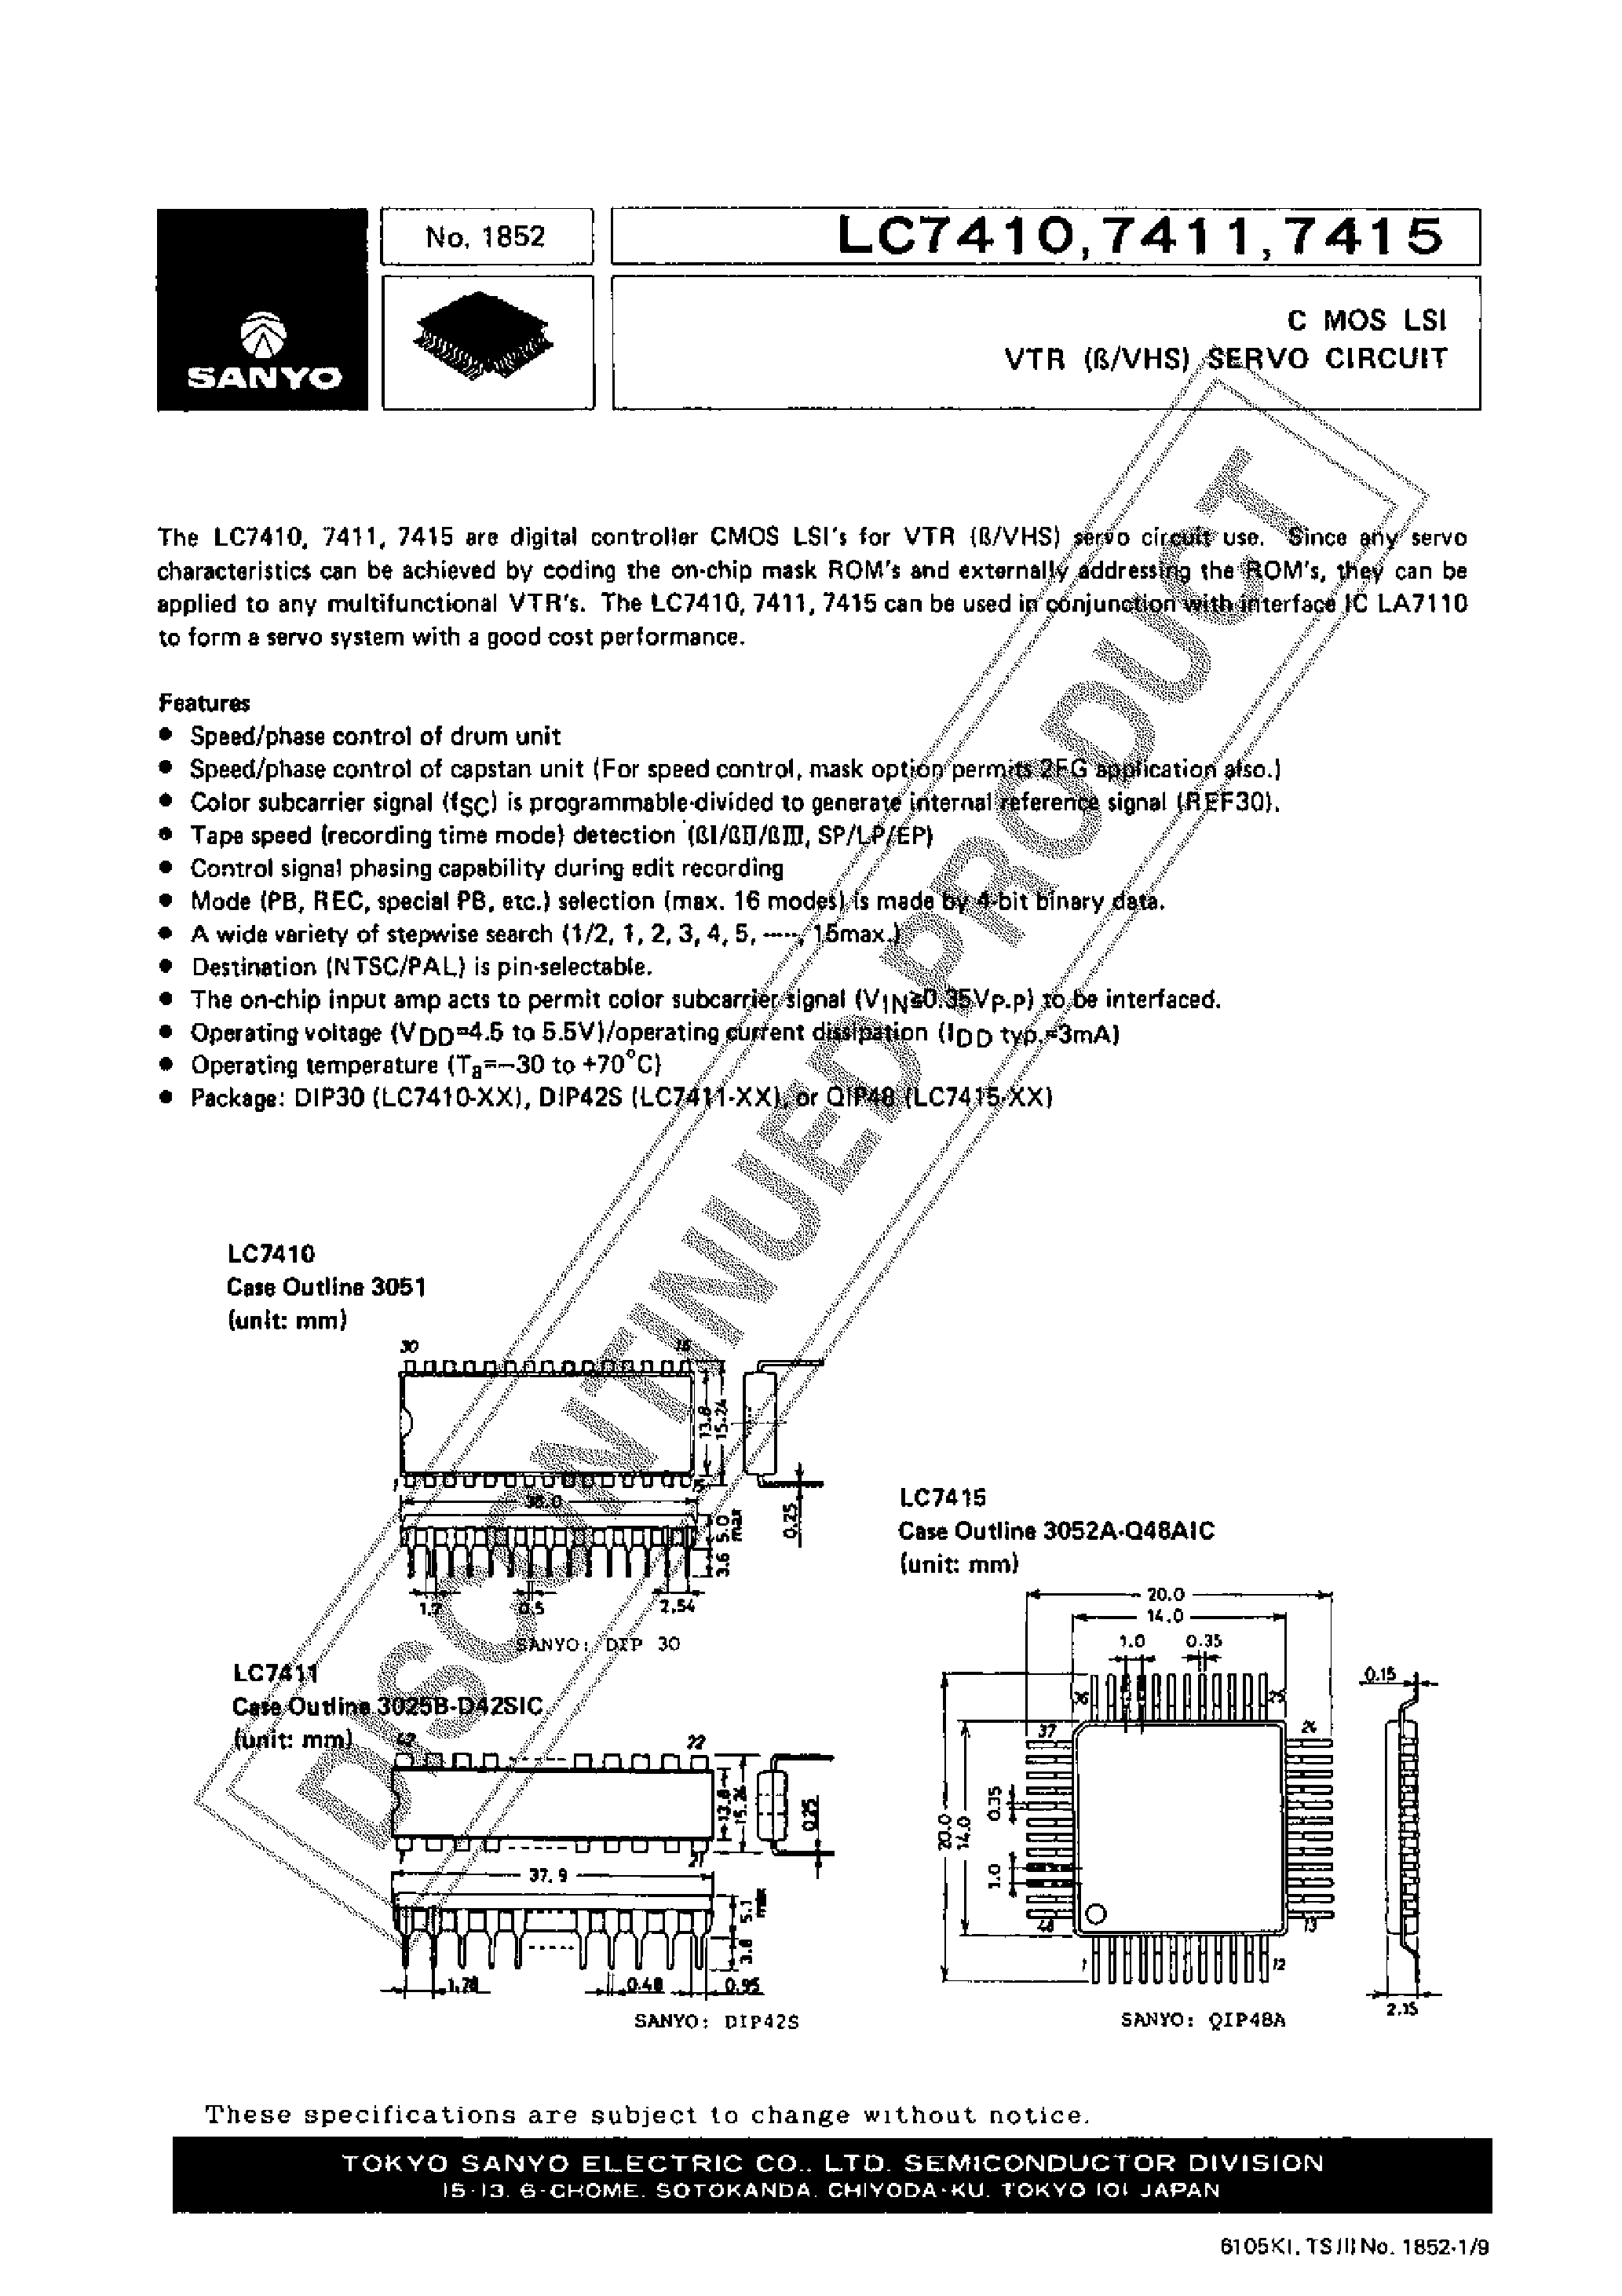 Datasheet LC7410 - (LC7410 - LC7415) CMOS LSI VTR(B/VHS) SERVO CIRCUIT page 1